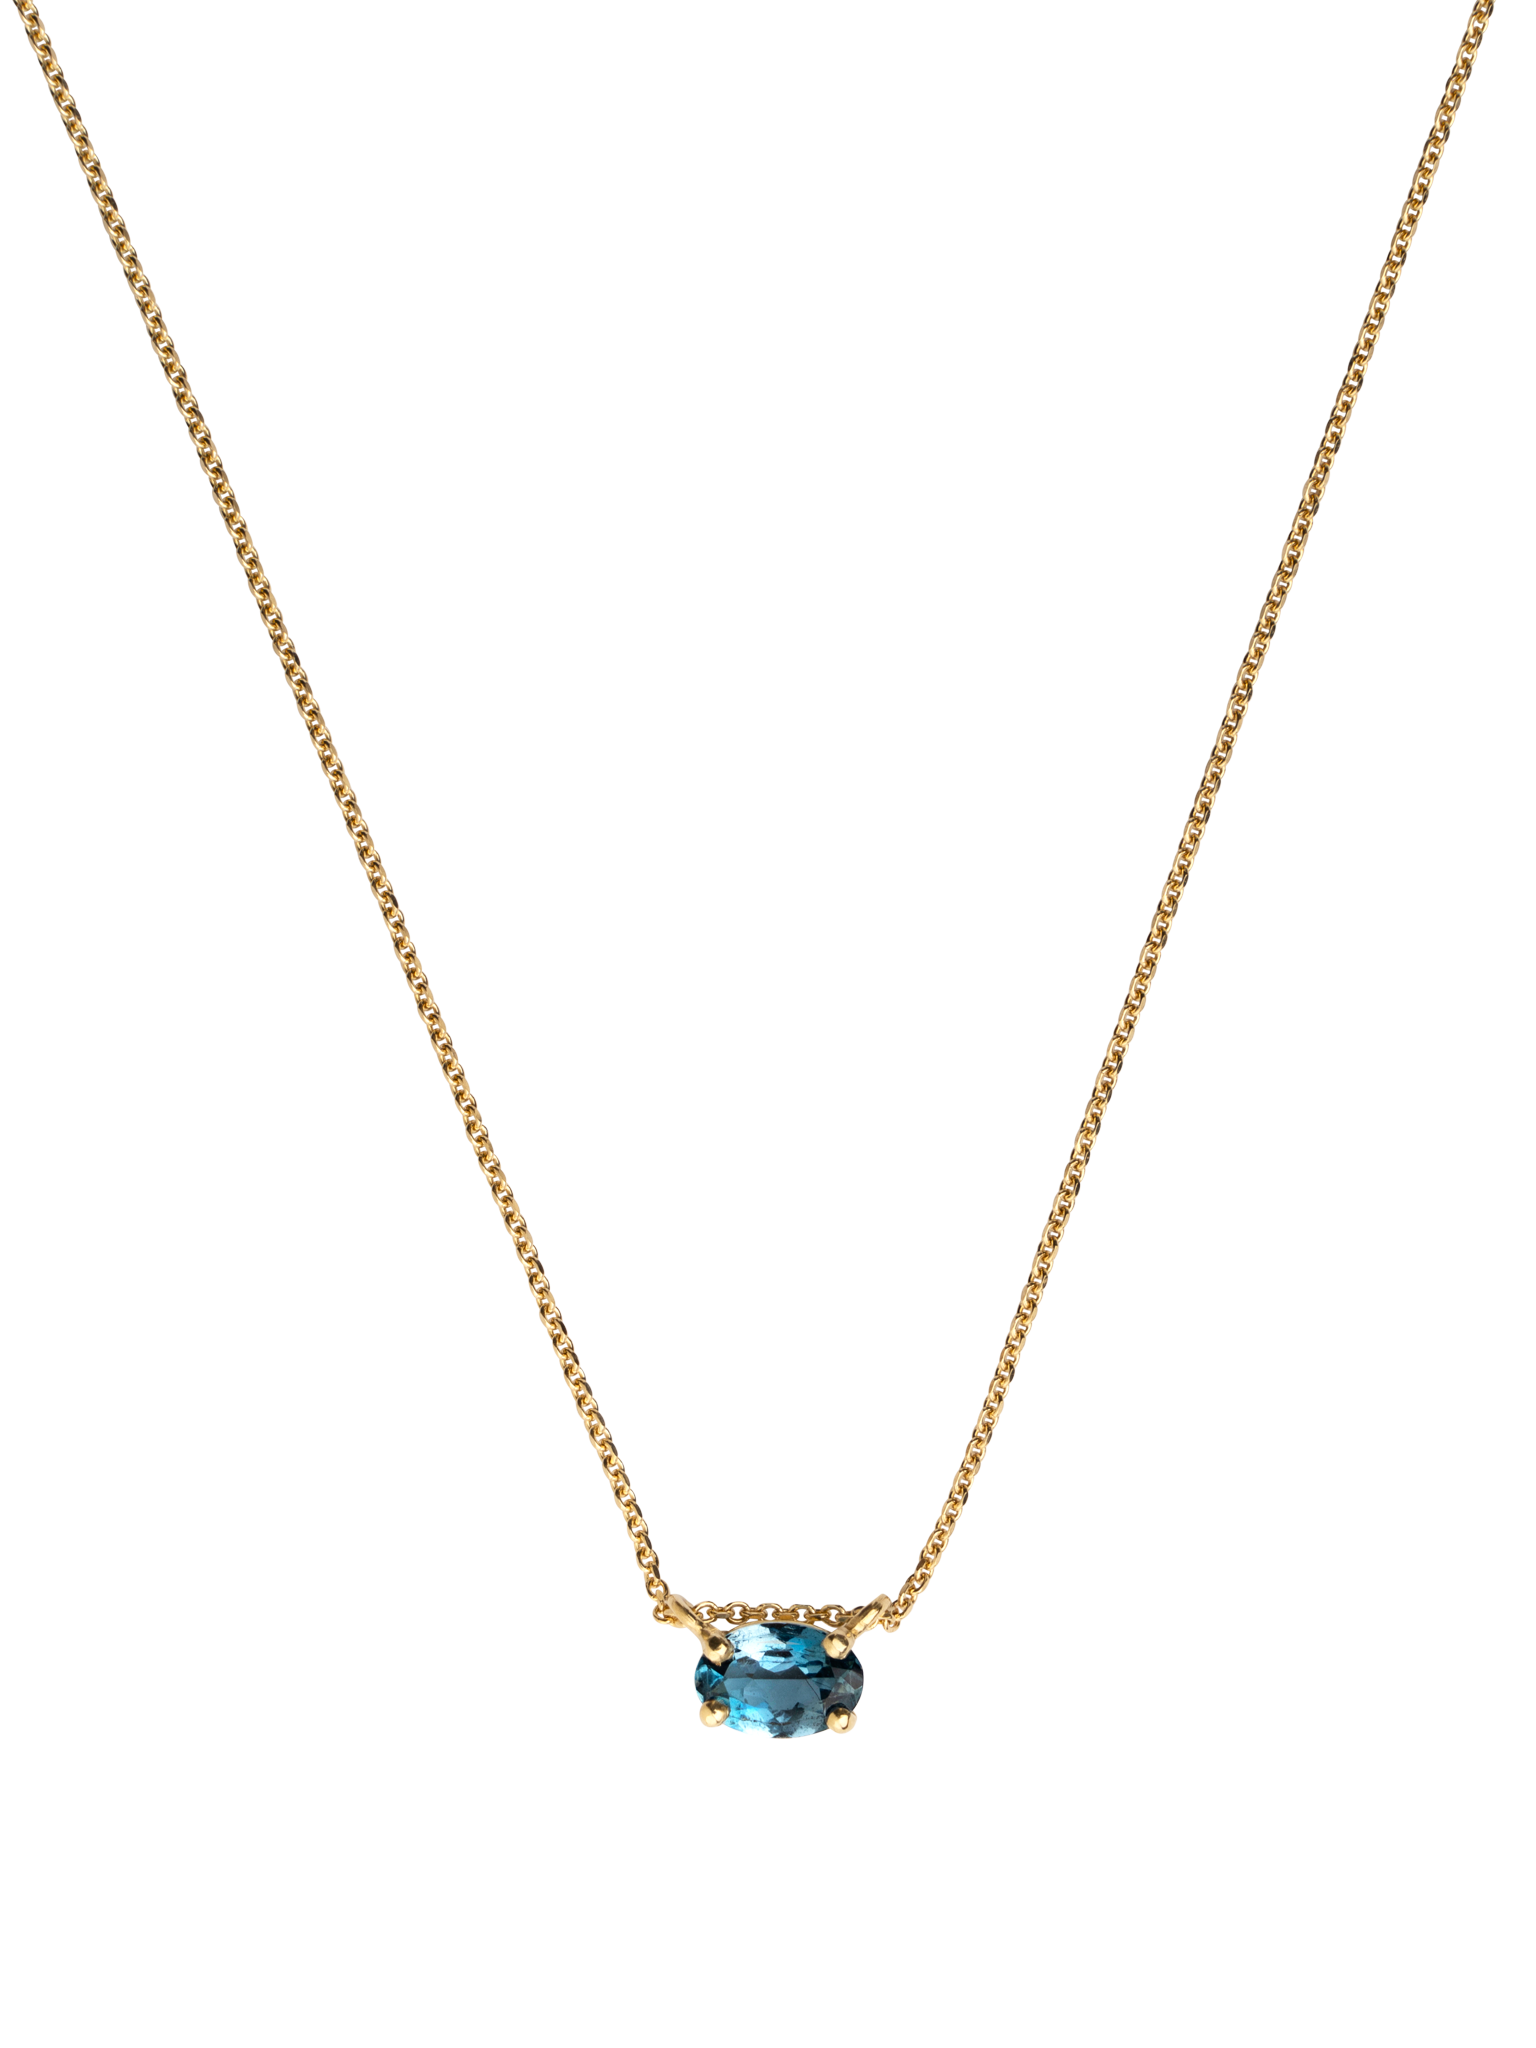 Galene aquamarine necklace